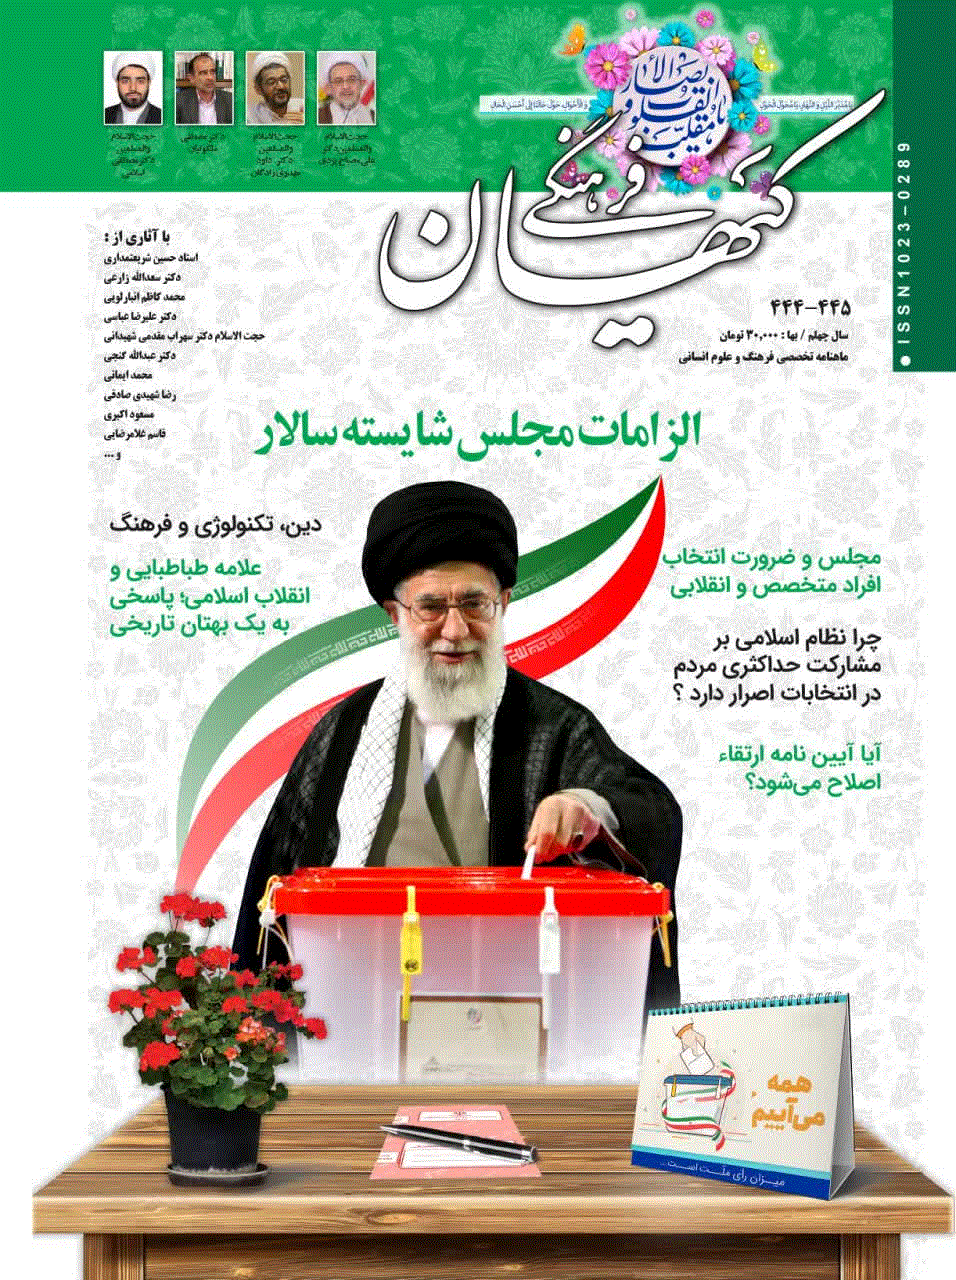 کیهان فرهنگی - تير 1380 - شماره 177